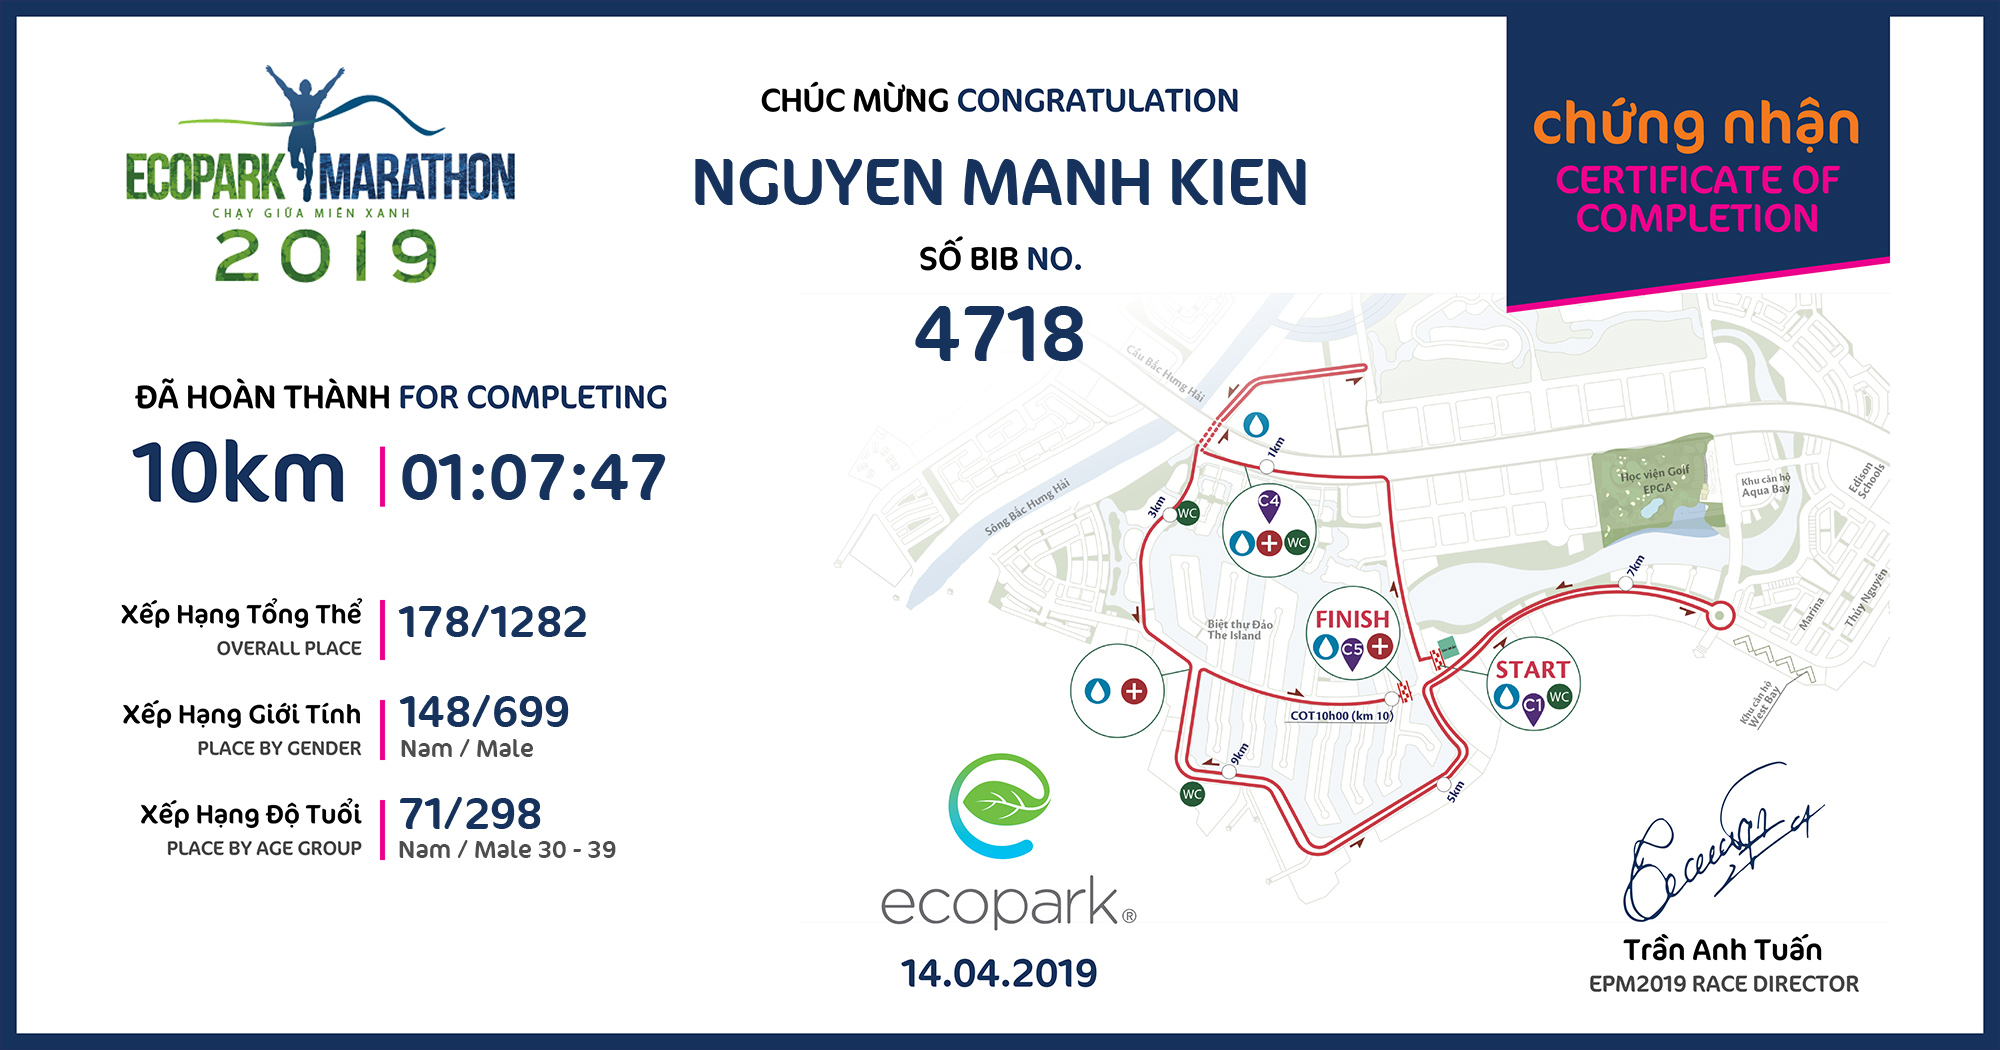 4718 - Nguyen Manh Kien